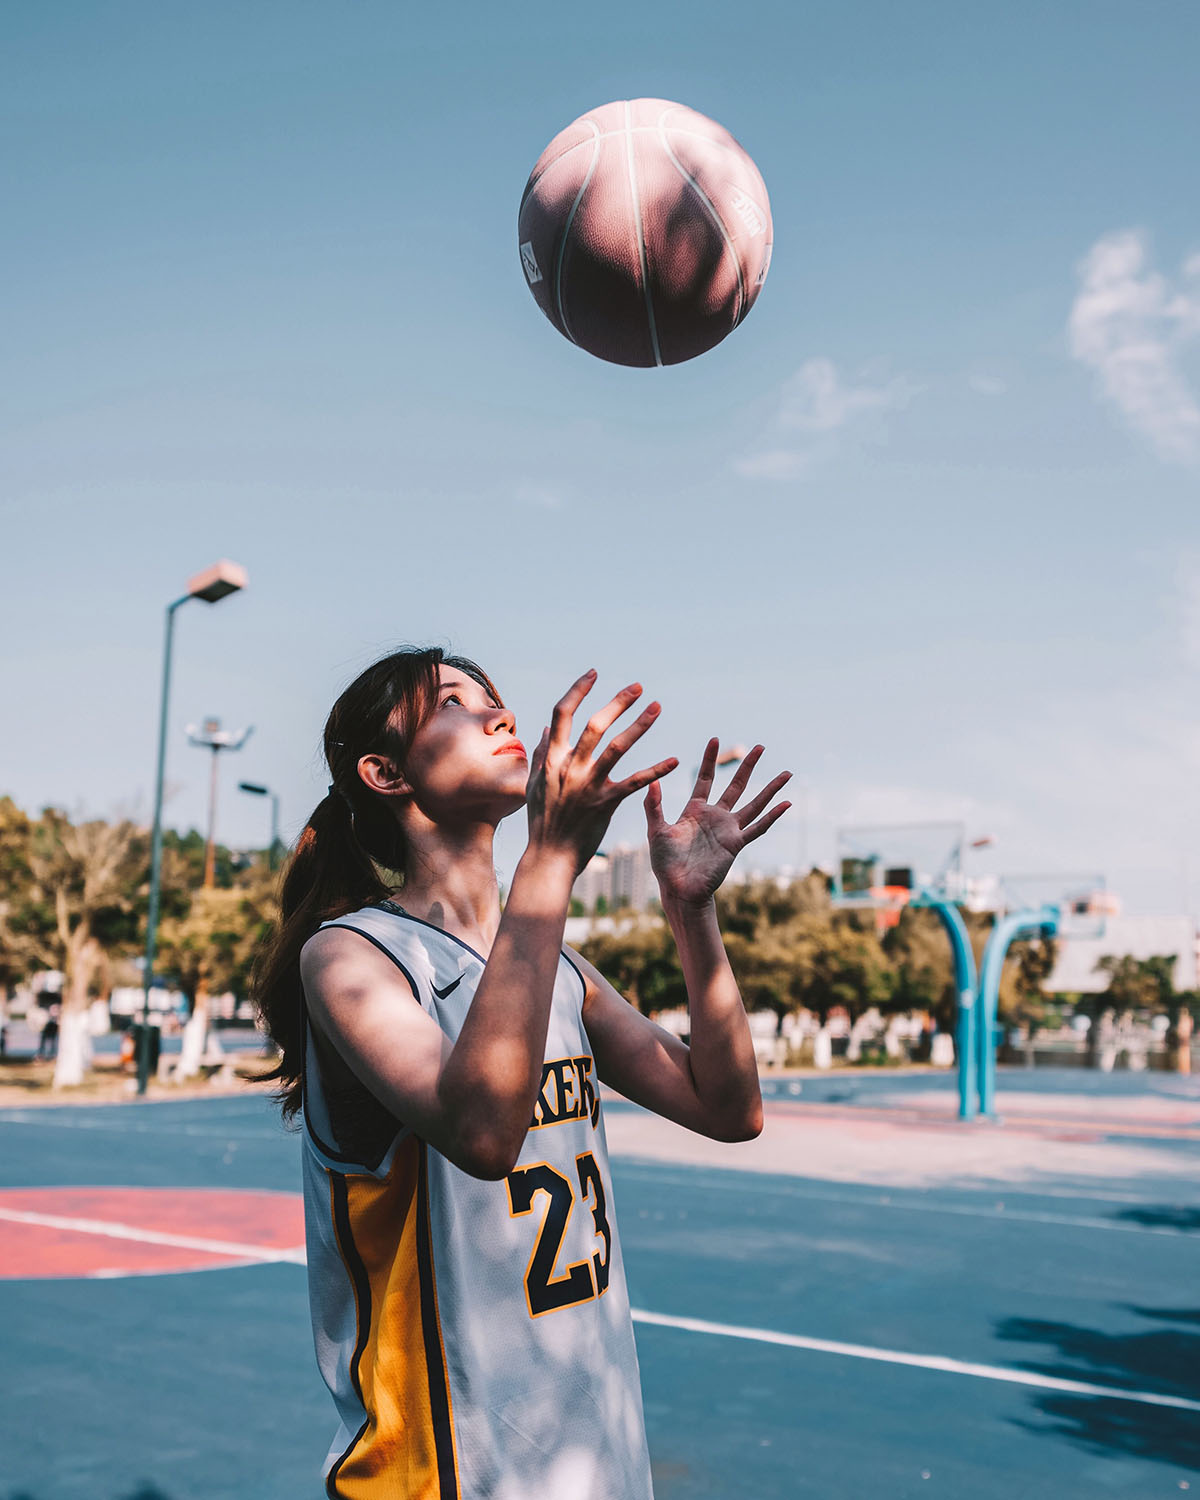 zdjęcie dziewczyny podrzucającej piłkę do koszykówki